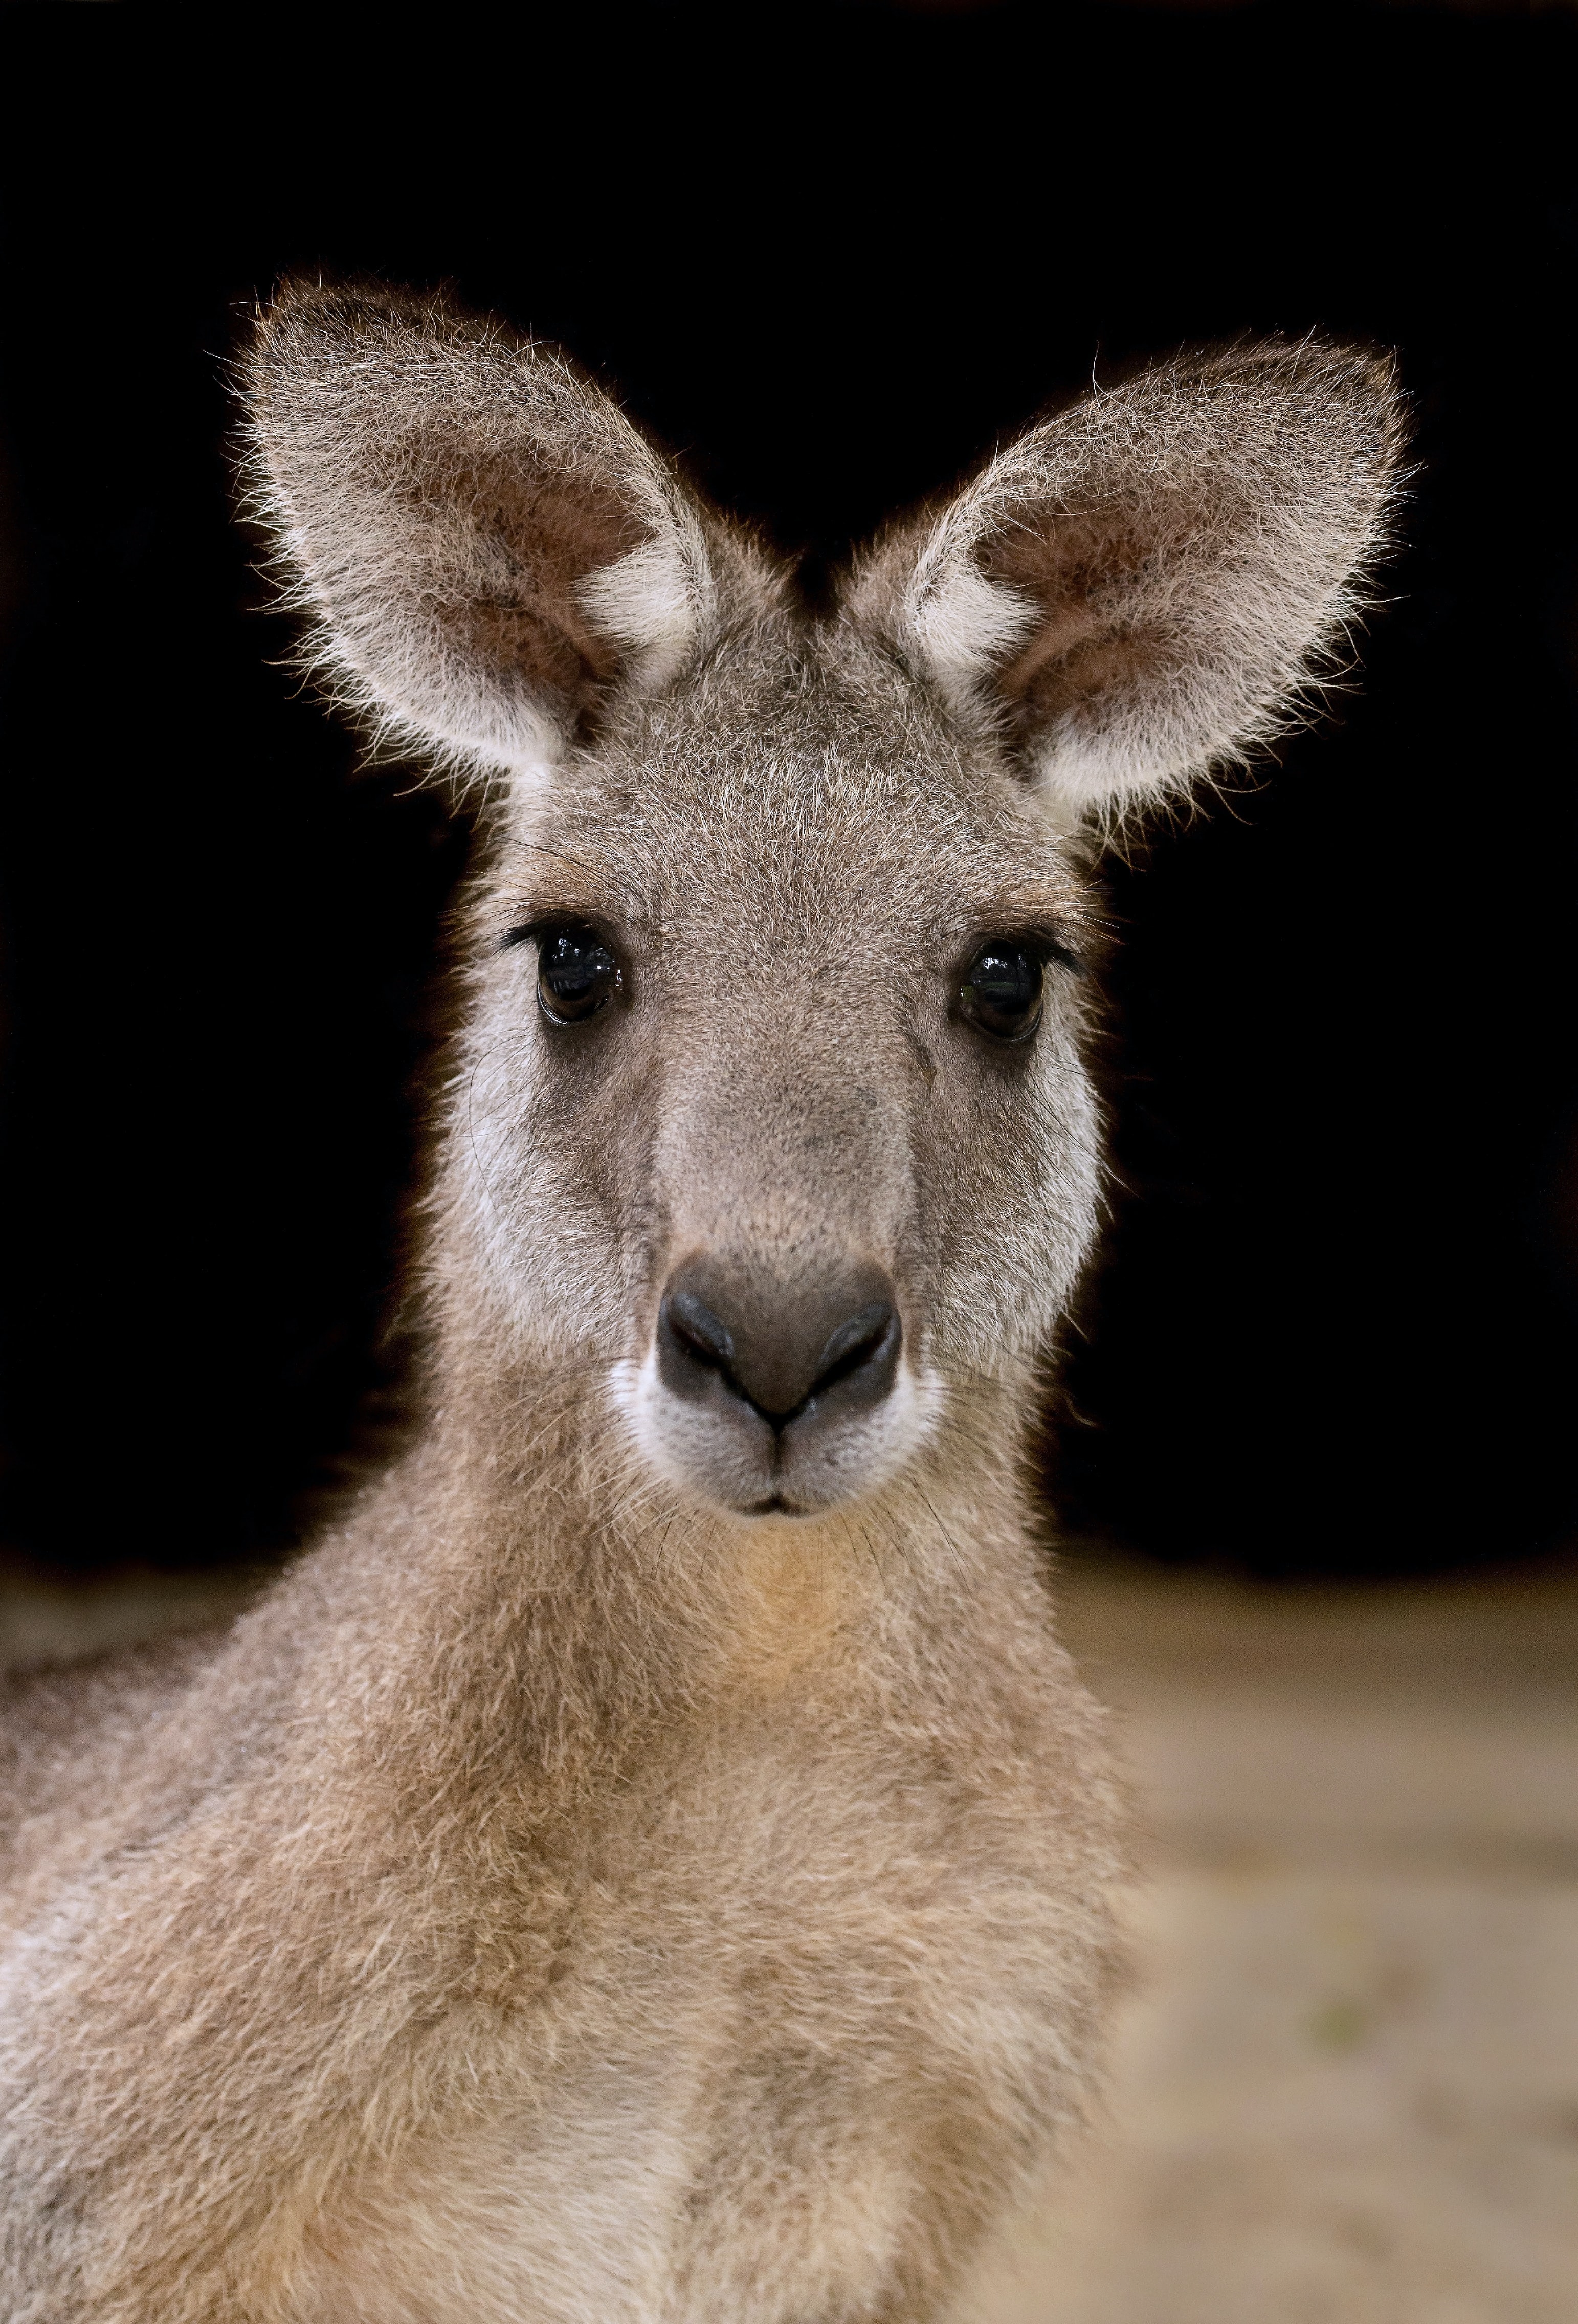 Kangaroo from Unsplash by David Clode